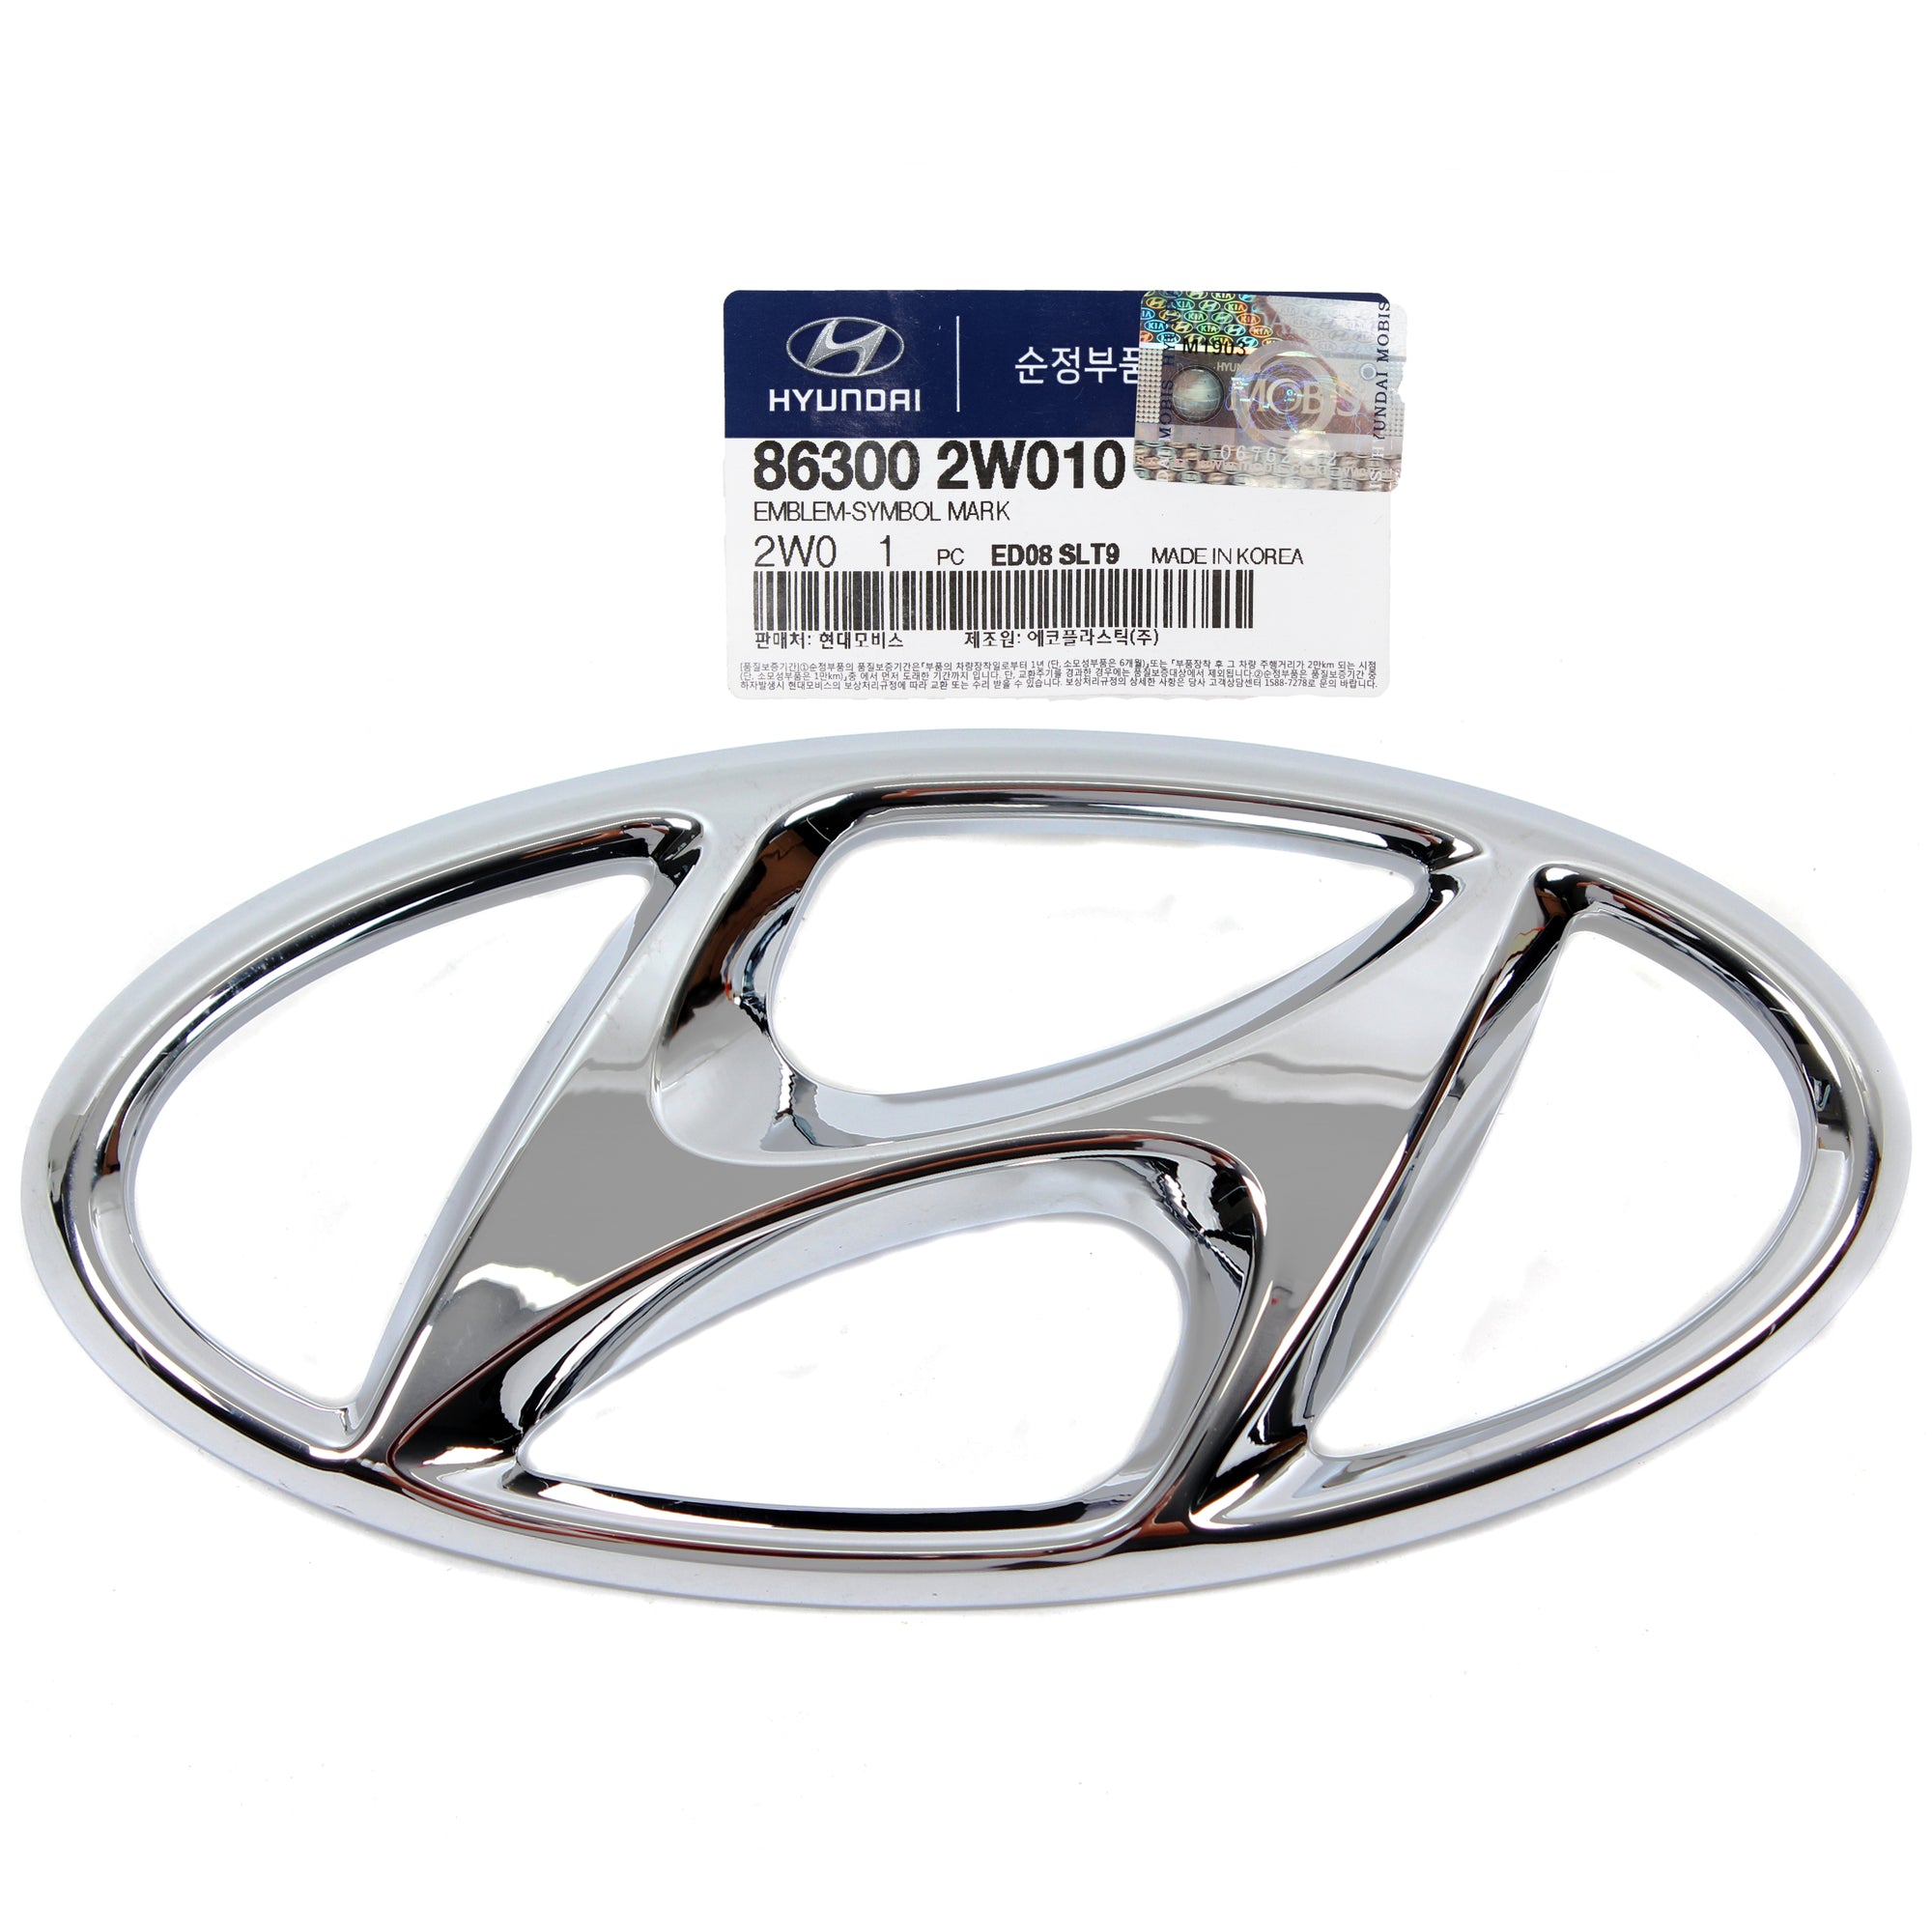 GENUINE Trunk Tailgate "H" Emblem for 2013-2018 Hyundai Santa Fe 863002W010